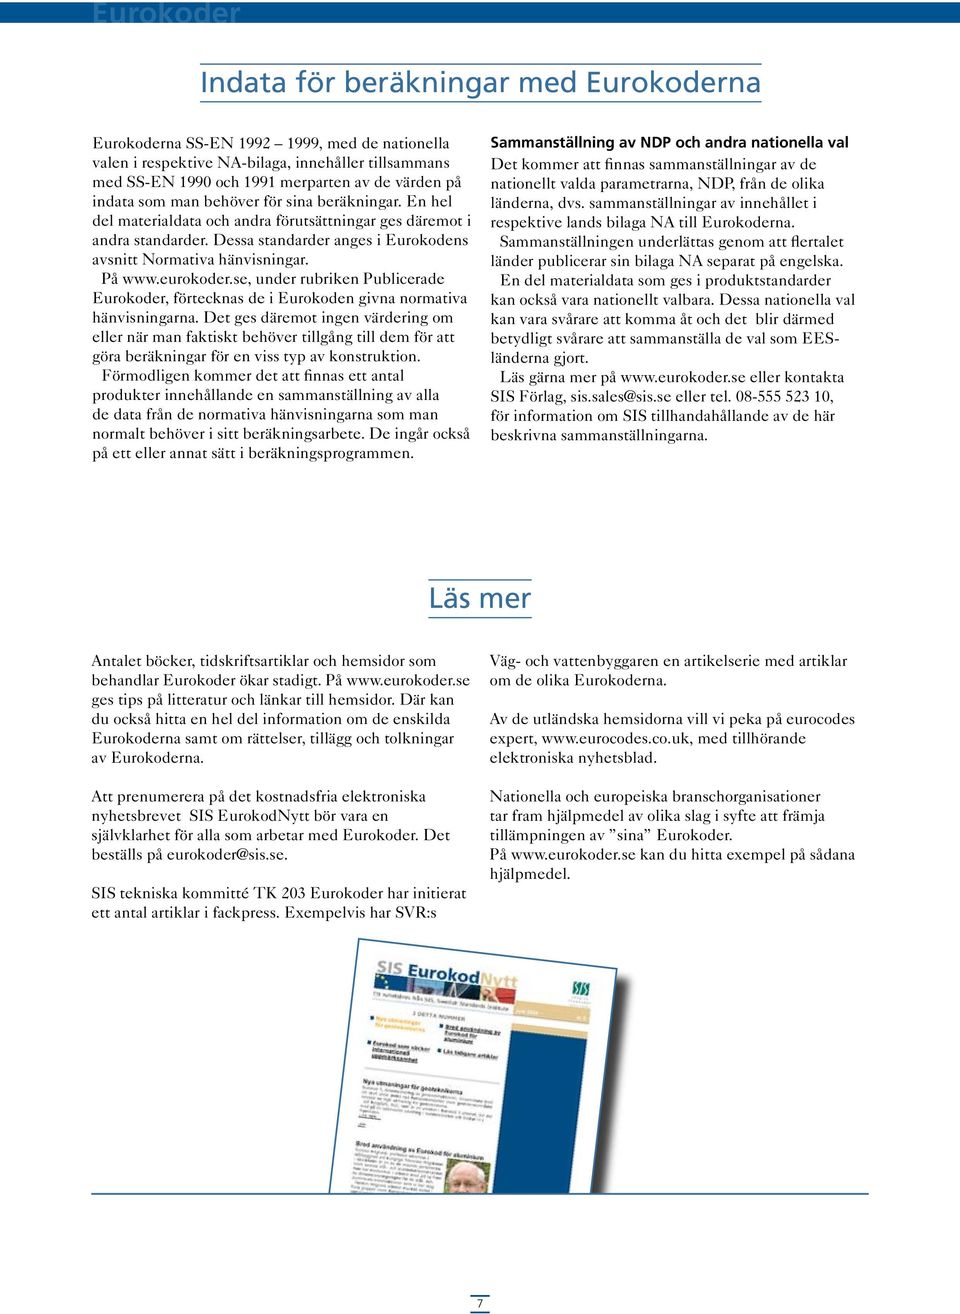 eurokoder.se, under rubriken Publicerade Eurokoder, förtecknas de i Eurokoden givna normativa hänvisningarna.